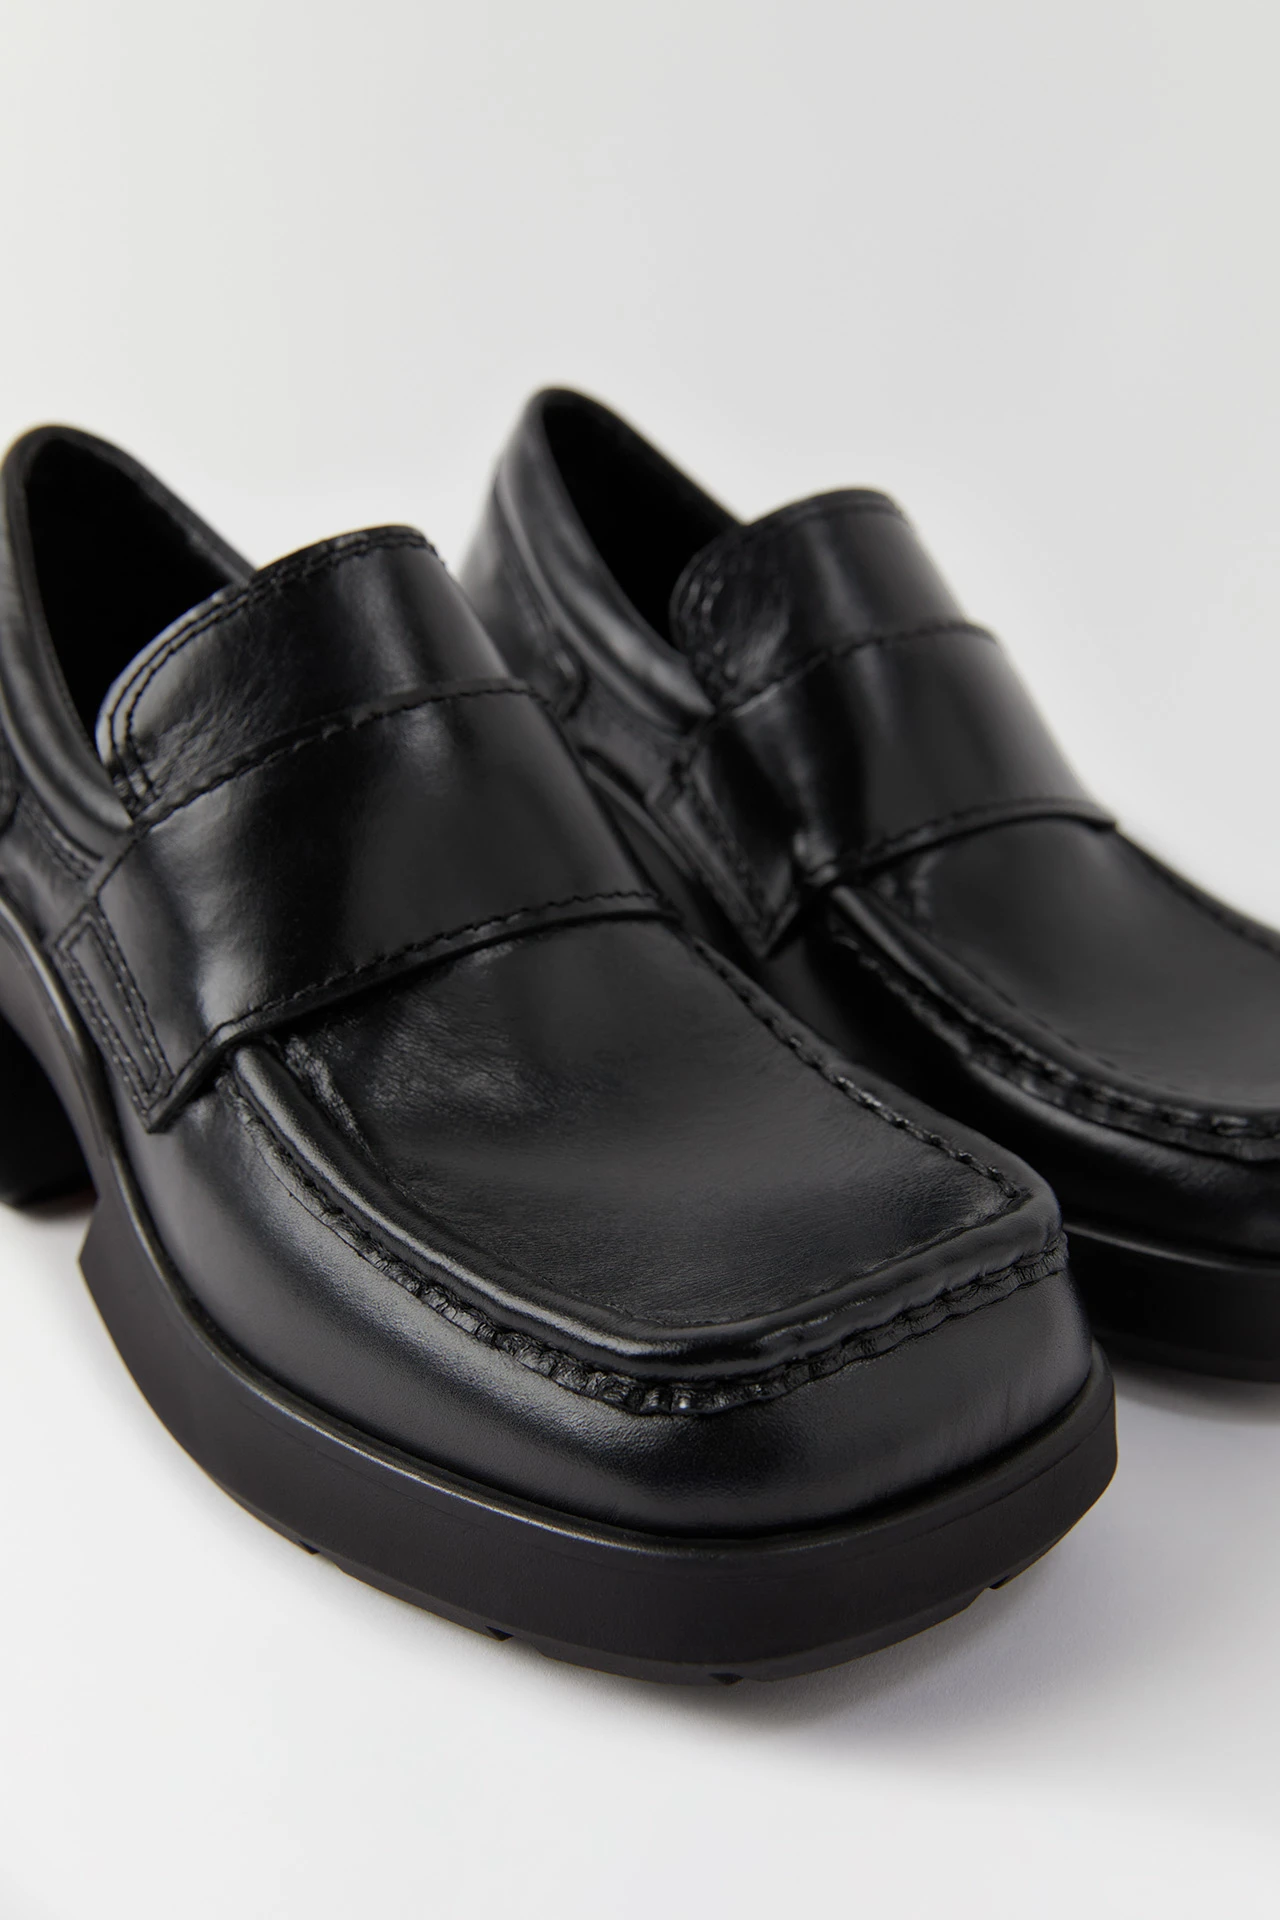 e8-billie-black-loafers-03